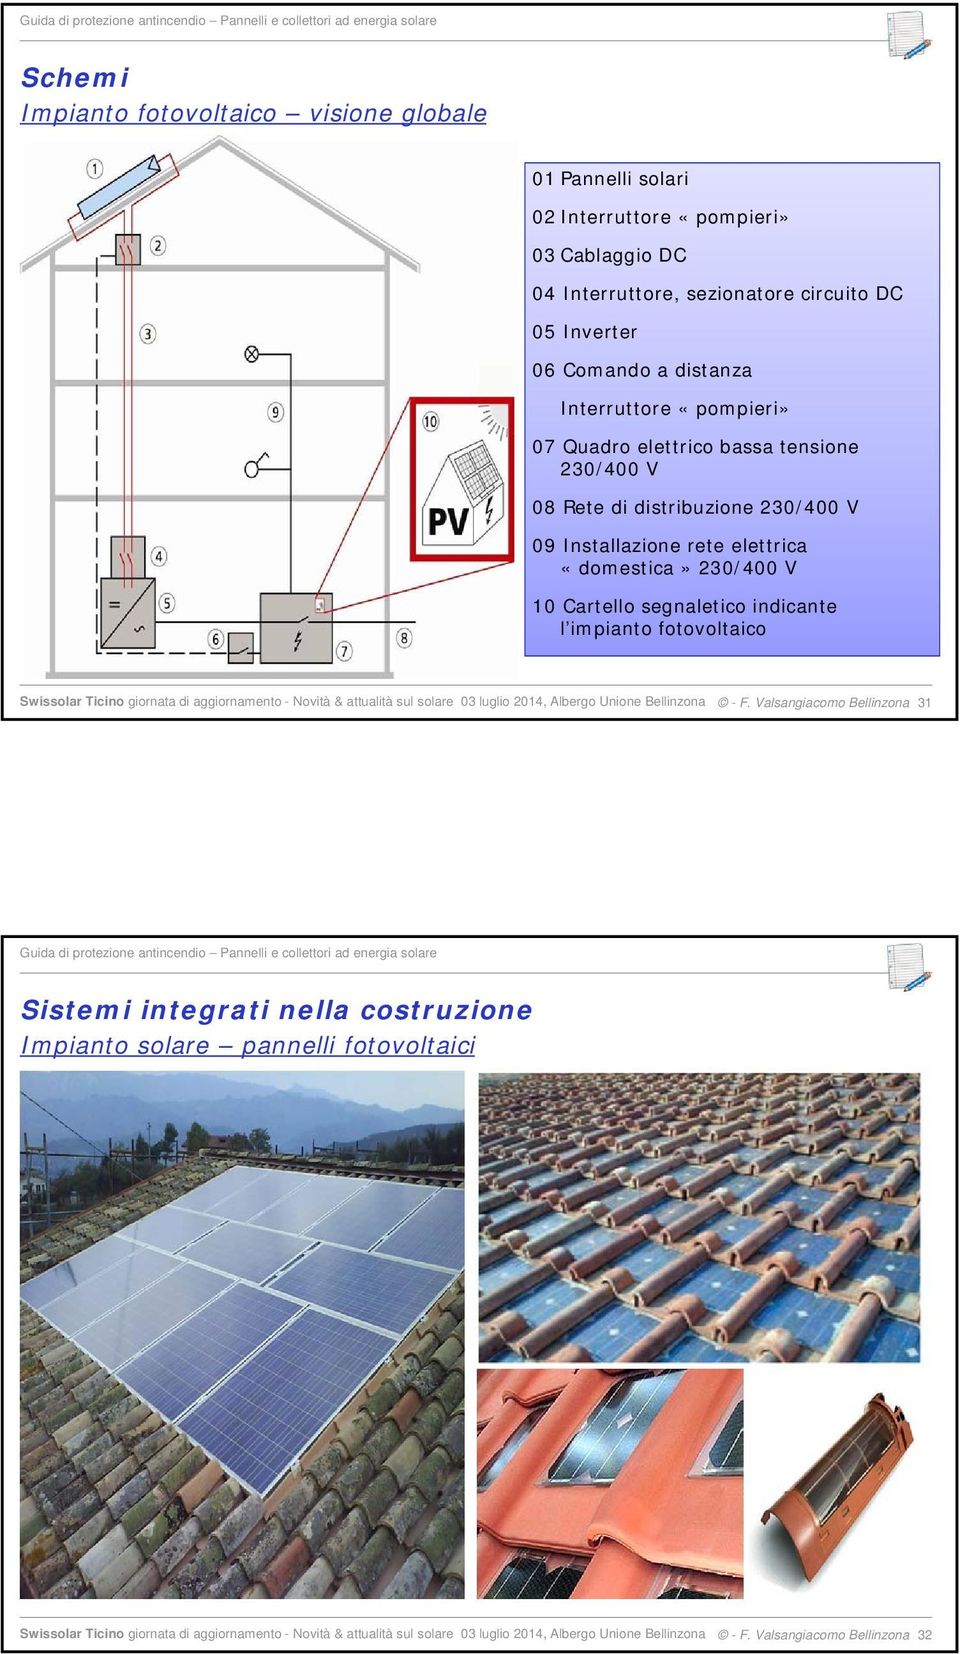 l impianto fotovoltaico Swissolar Ticino giornata di aggiornamento - Novità & attualità sul solare 03 luglio 2014, Albergo Unione Bellinzona - F.